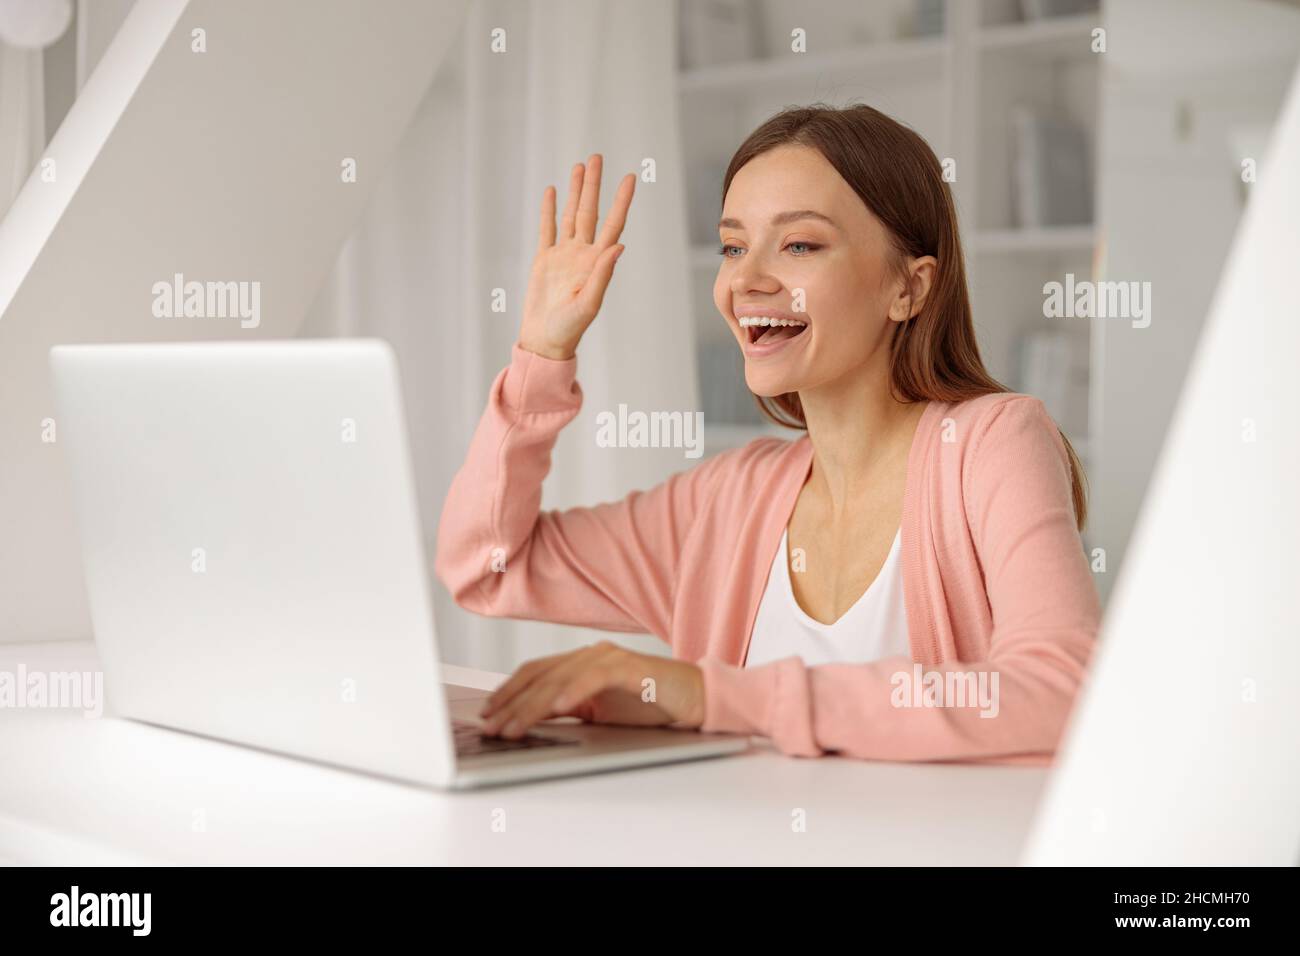 Lächelnde, hübsche Frau, die während eines Videoanrufs einen Laptop benutzt Stockfoto